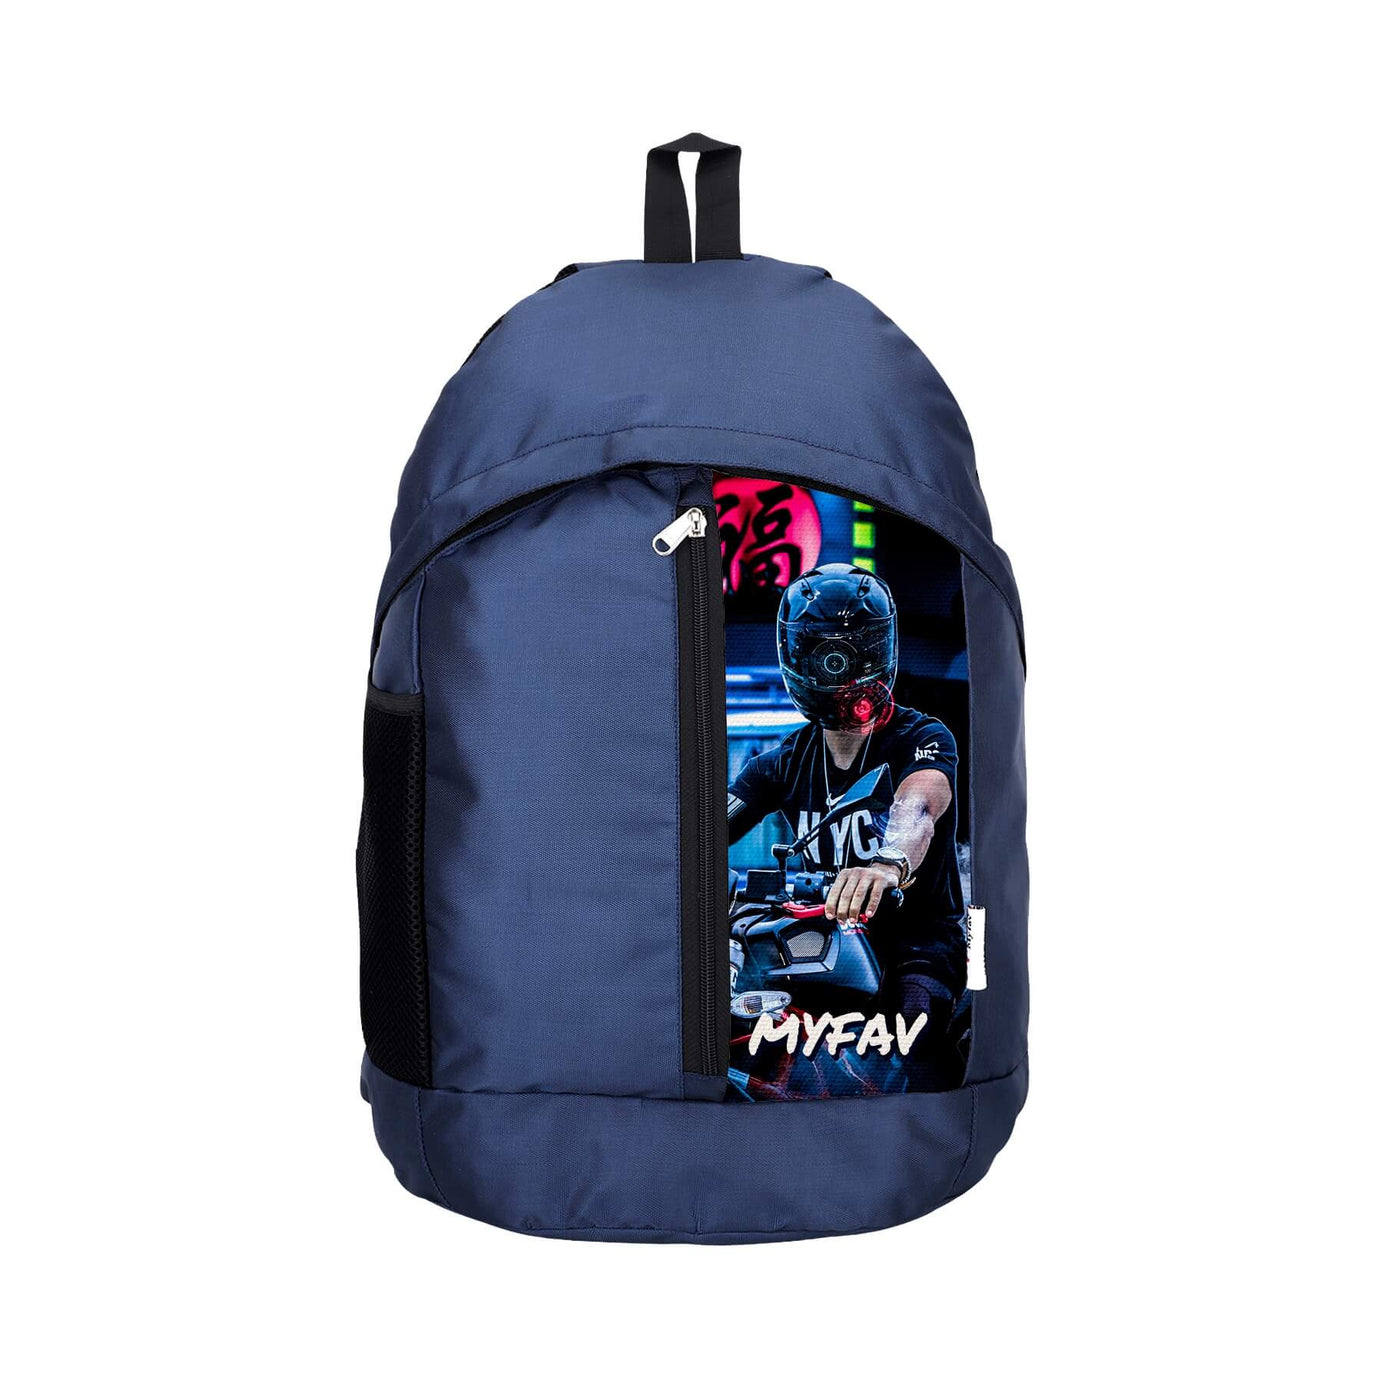 My Fav 21 L Navy Blue Laptop Backpack for Men Women / College Bag for Boys Girls / Office Bag